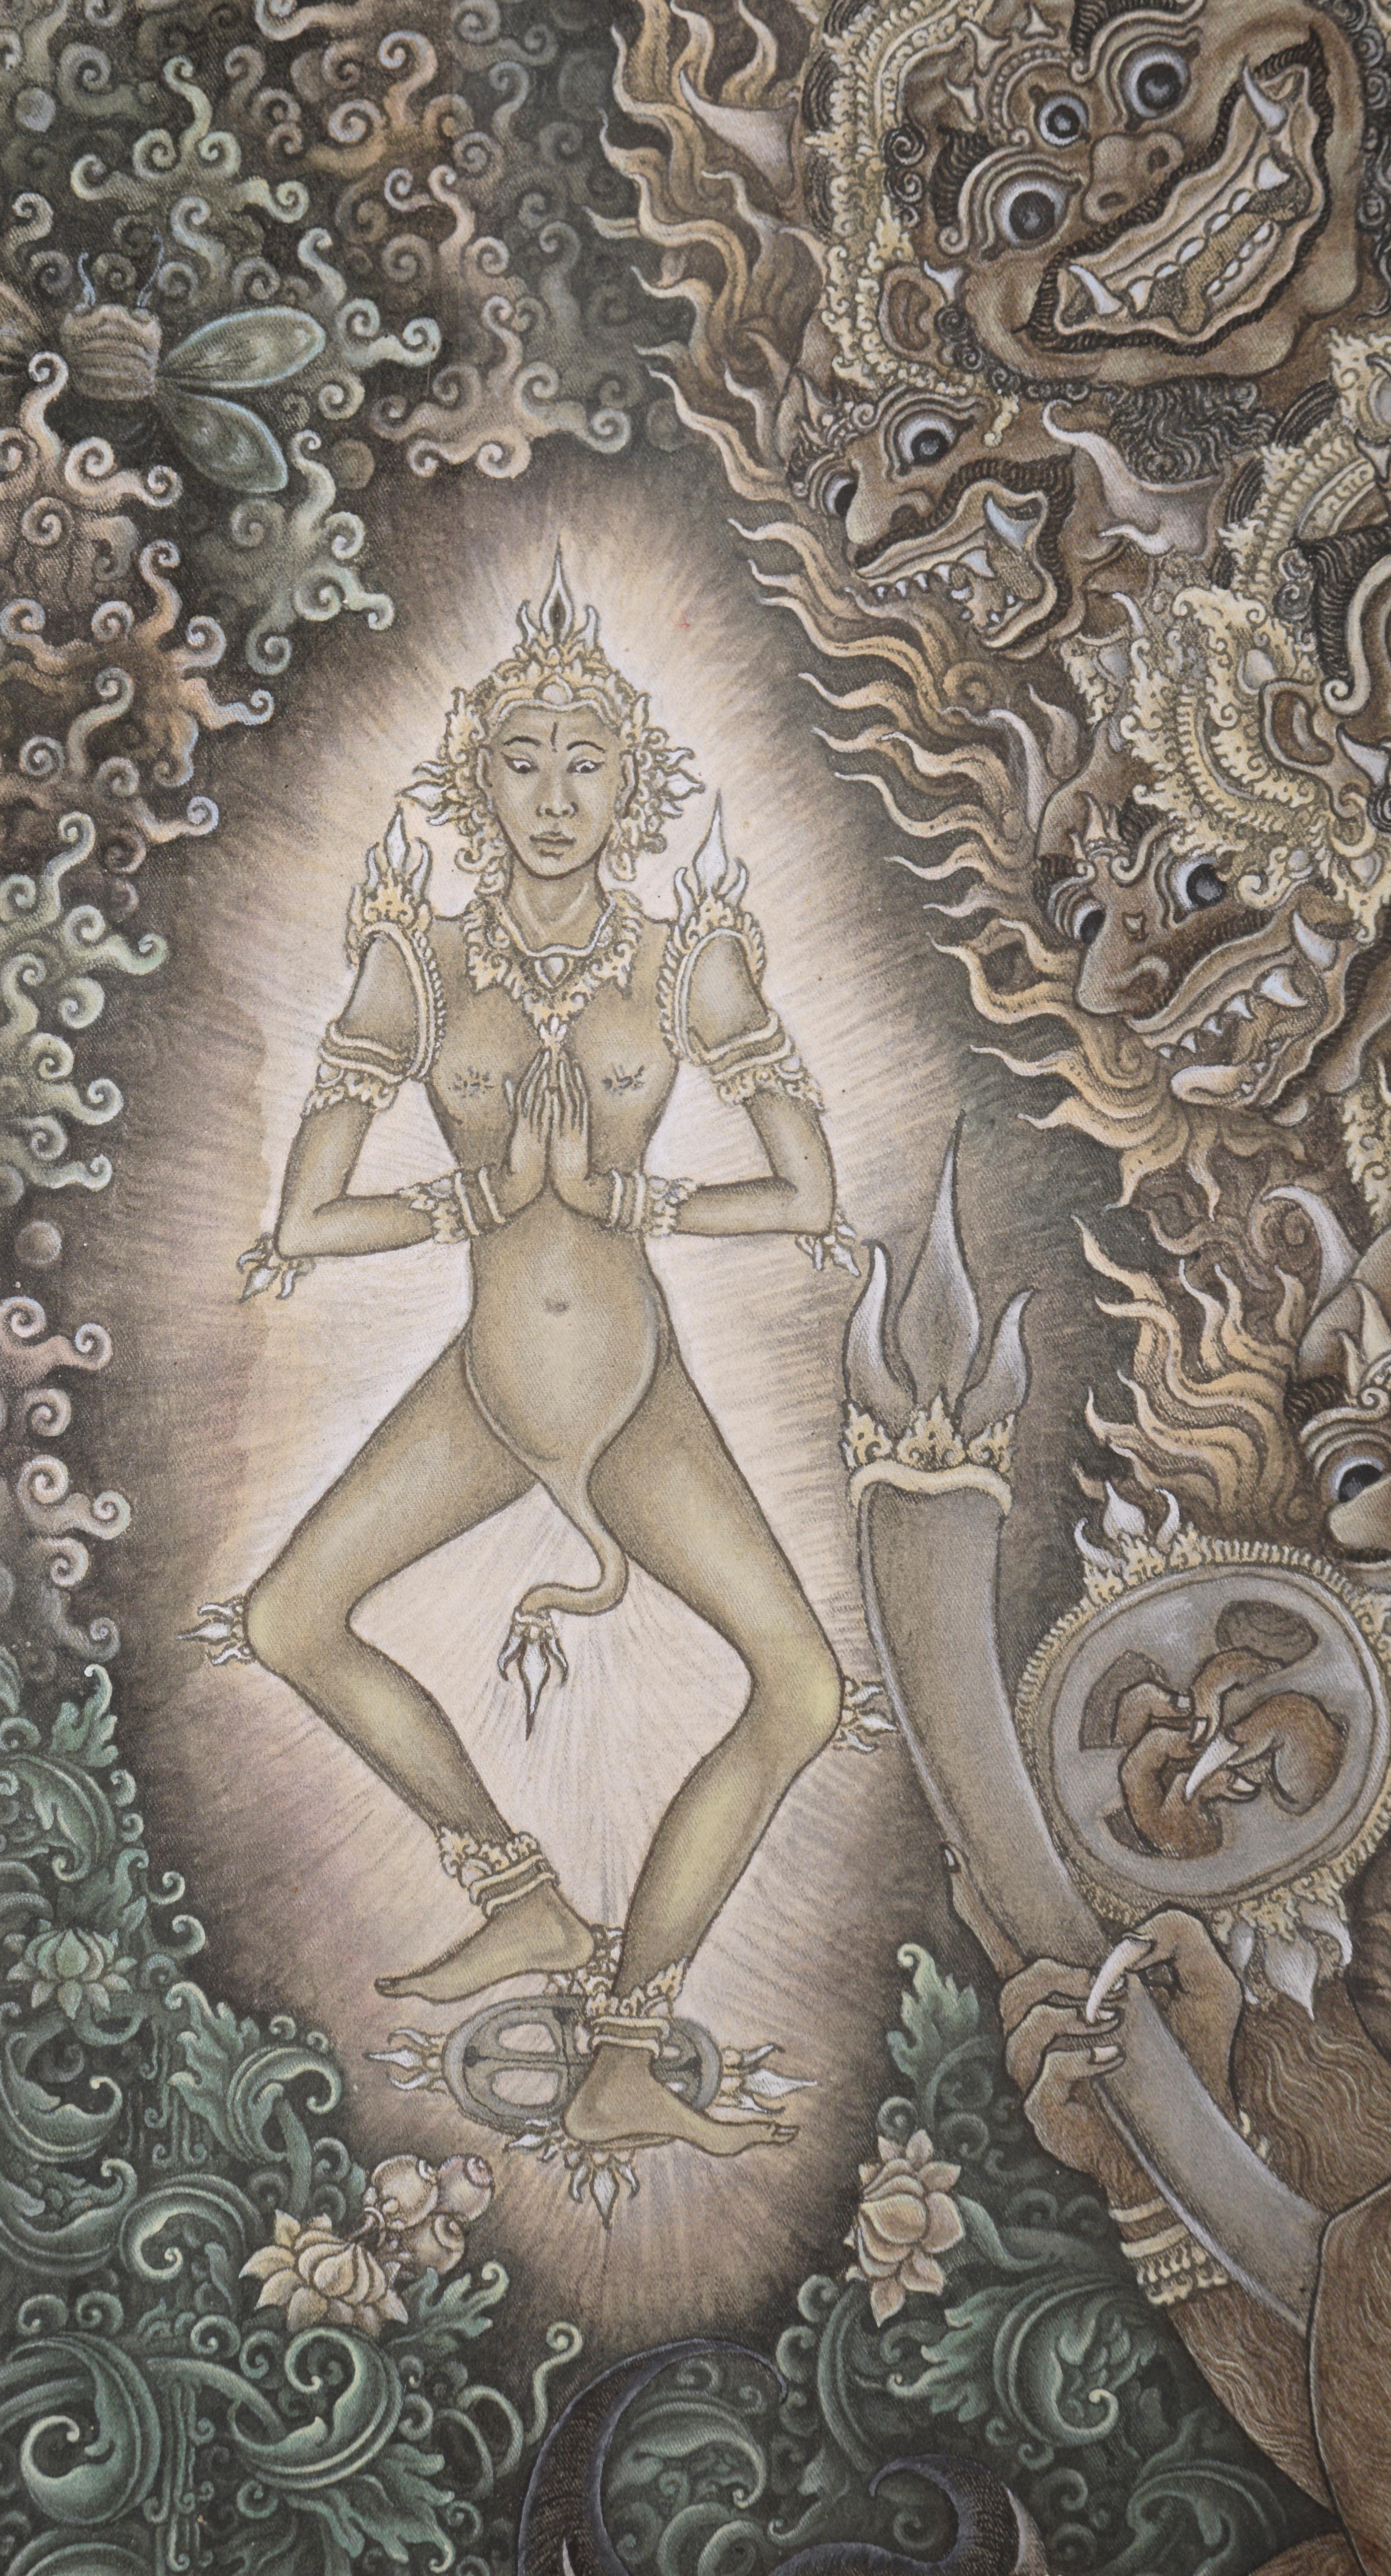 Unglaublich detaillierte Darstellung der Göttin Kali, die vor einem Jäger erscheint, von Konci (Balinese, 20. Jahrhundert). Die detail- und bildreiche Arbeit zeigt die Göttin Kali im Wald zusammen mit anderen gottgleichen Figuren. Ein Jäger kniet